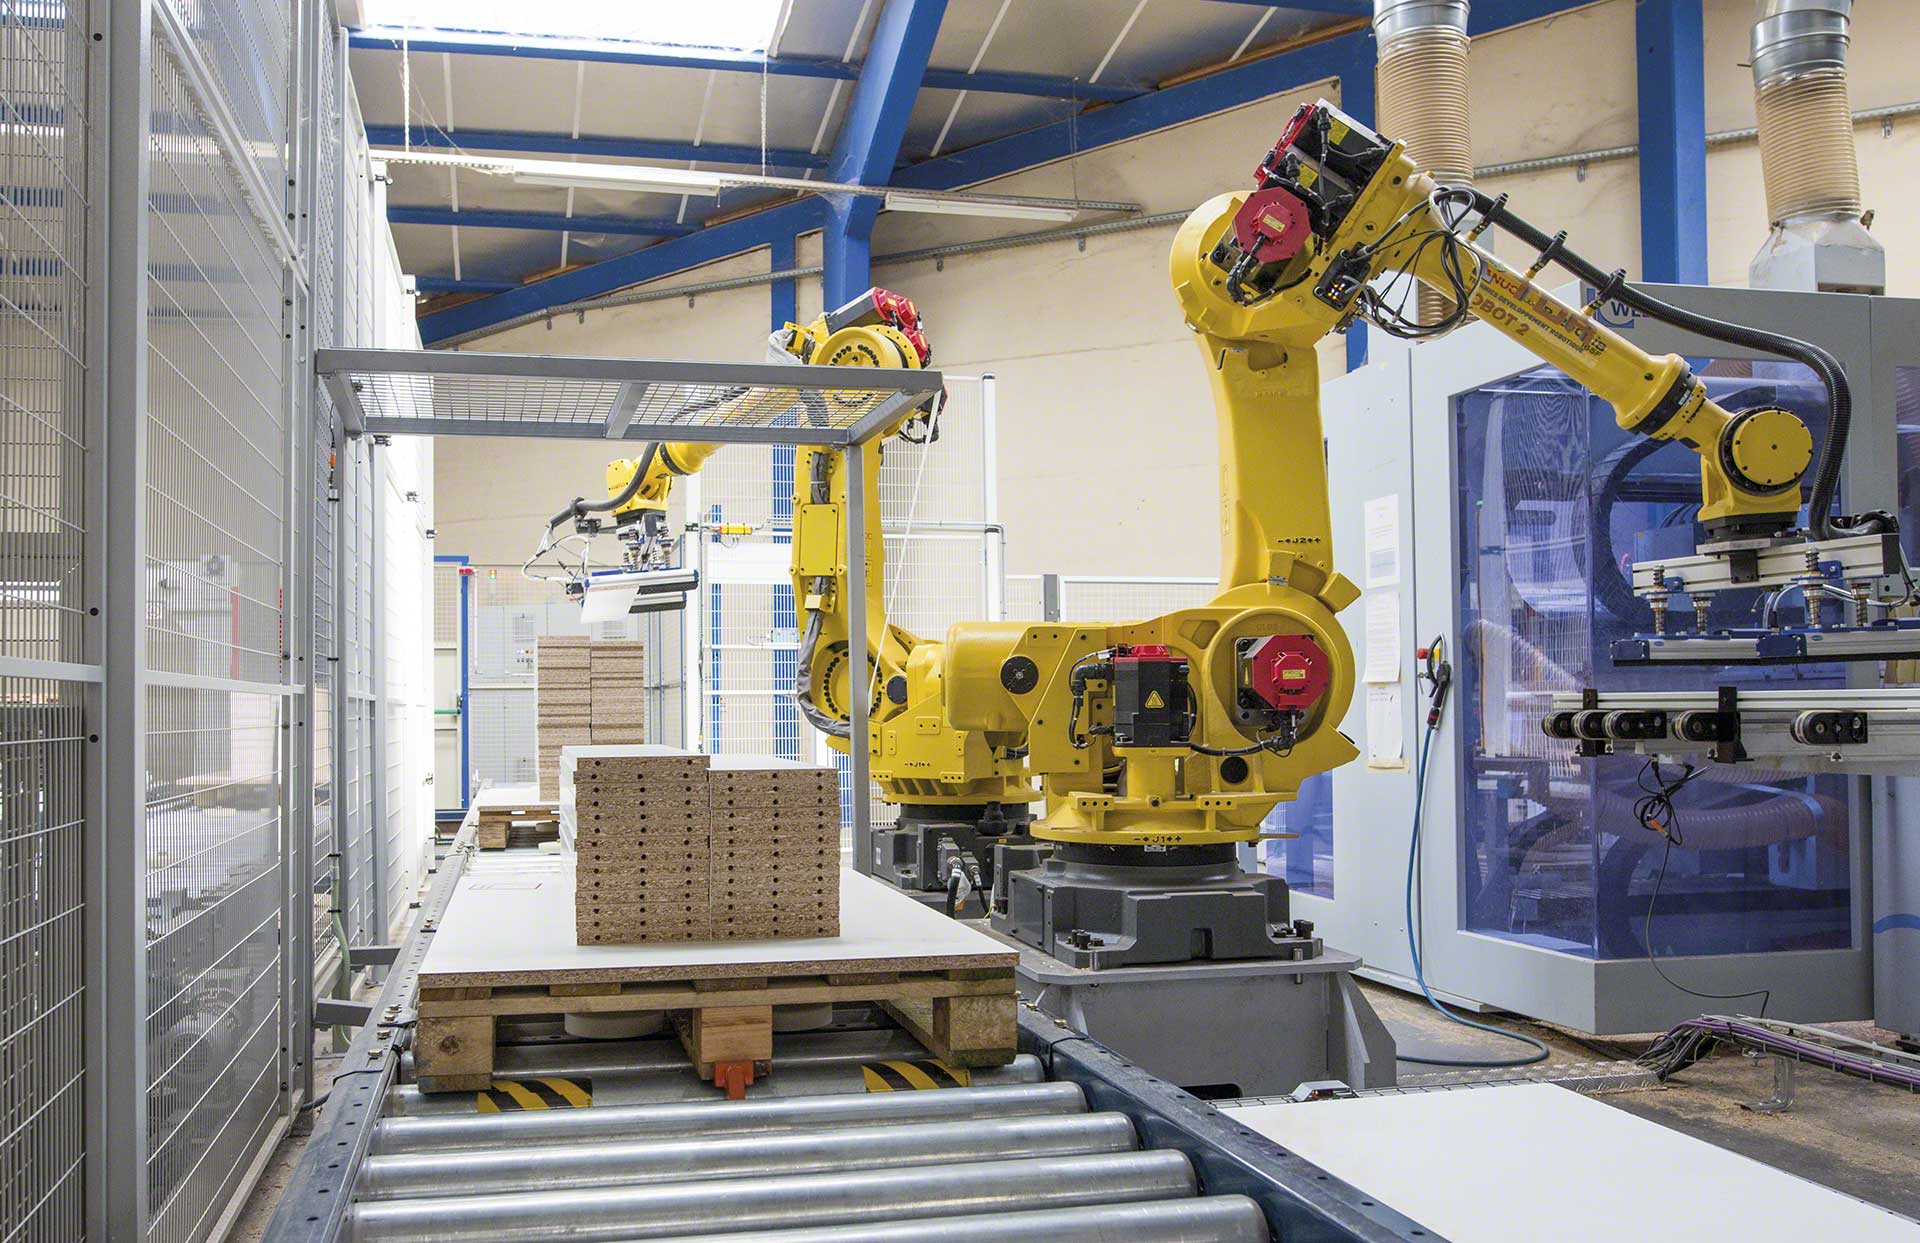 Automatische systemen worden steeds autonomer binnen het kader van Industrie 4.0